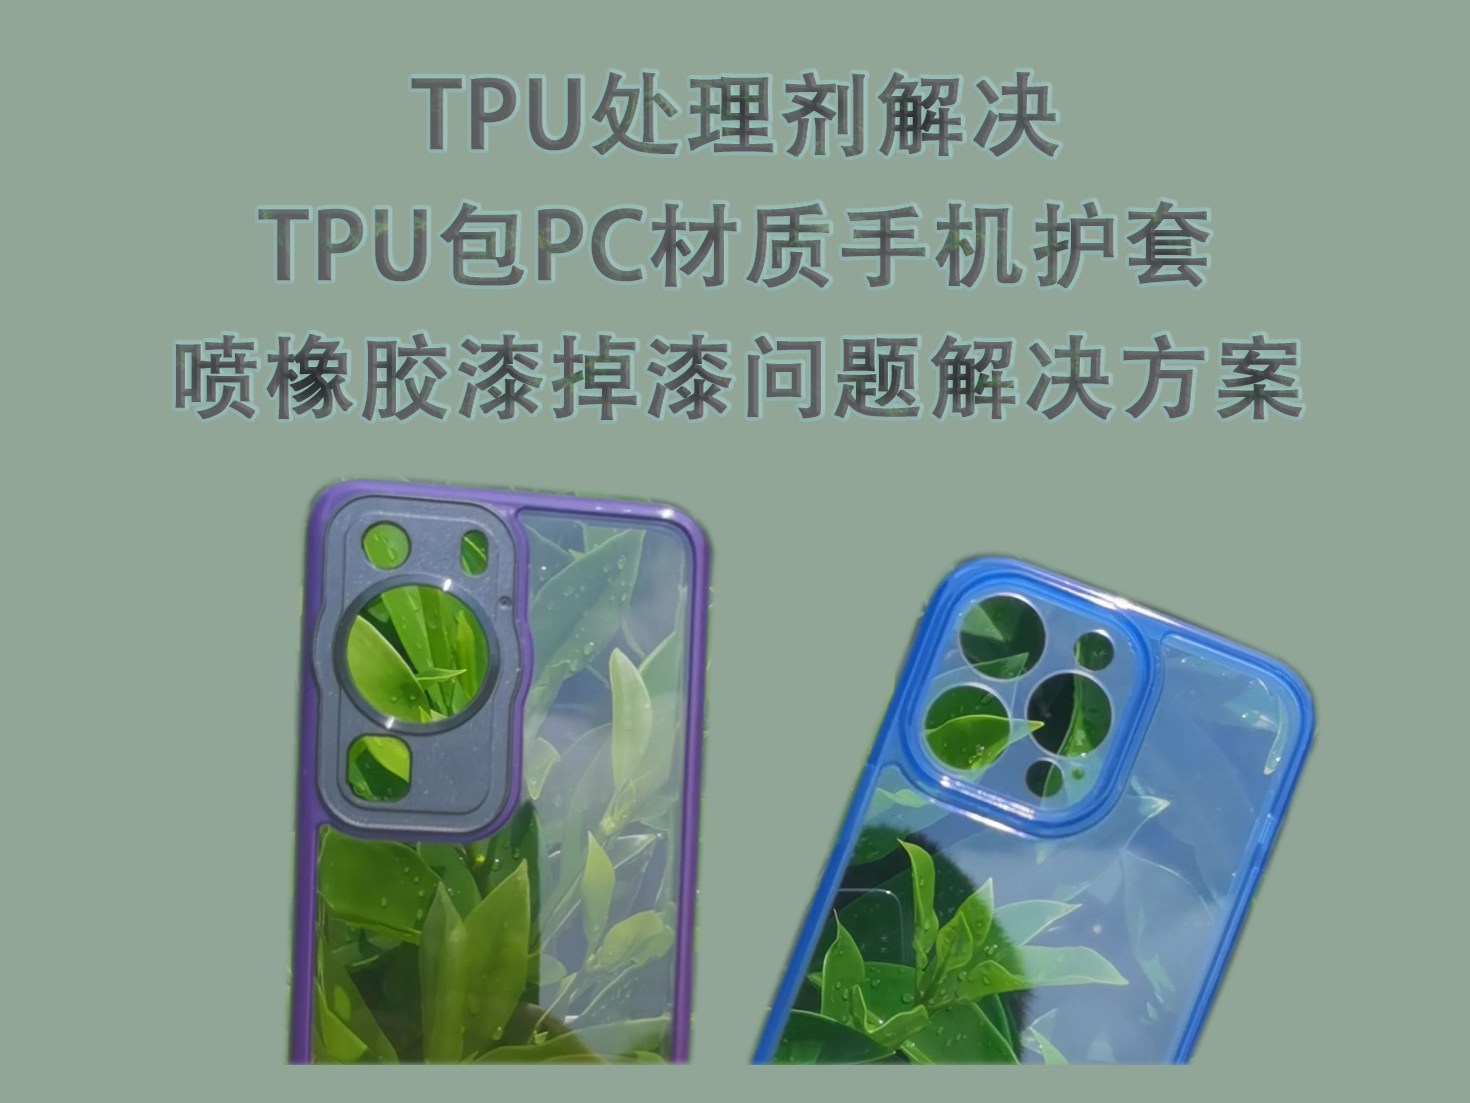 TPU处理剂解决TPU包PC材质手机护套喷橡胶漆掉漆问题解决方案